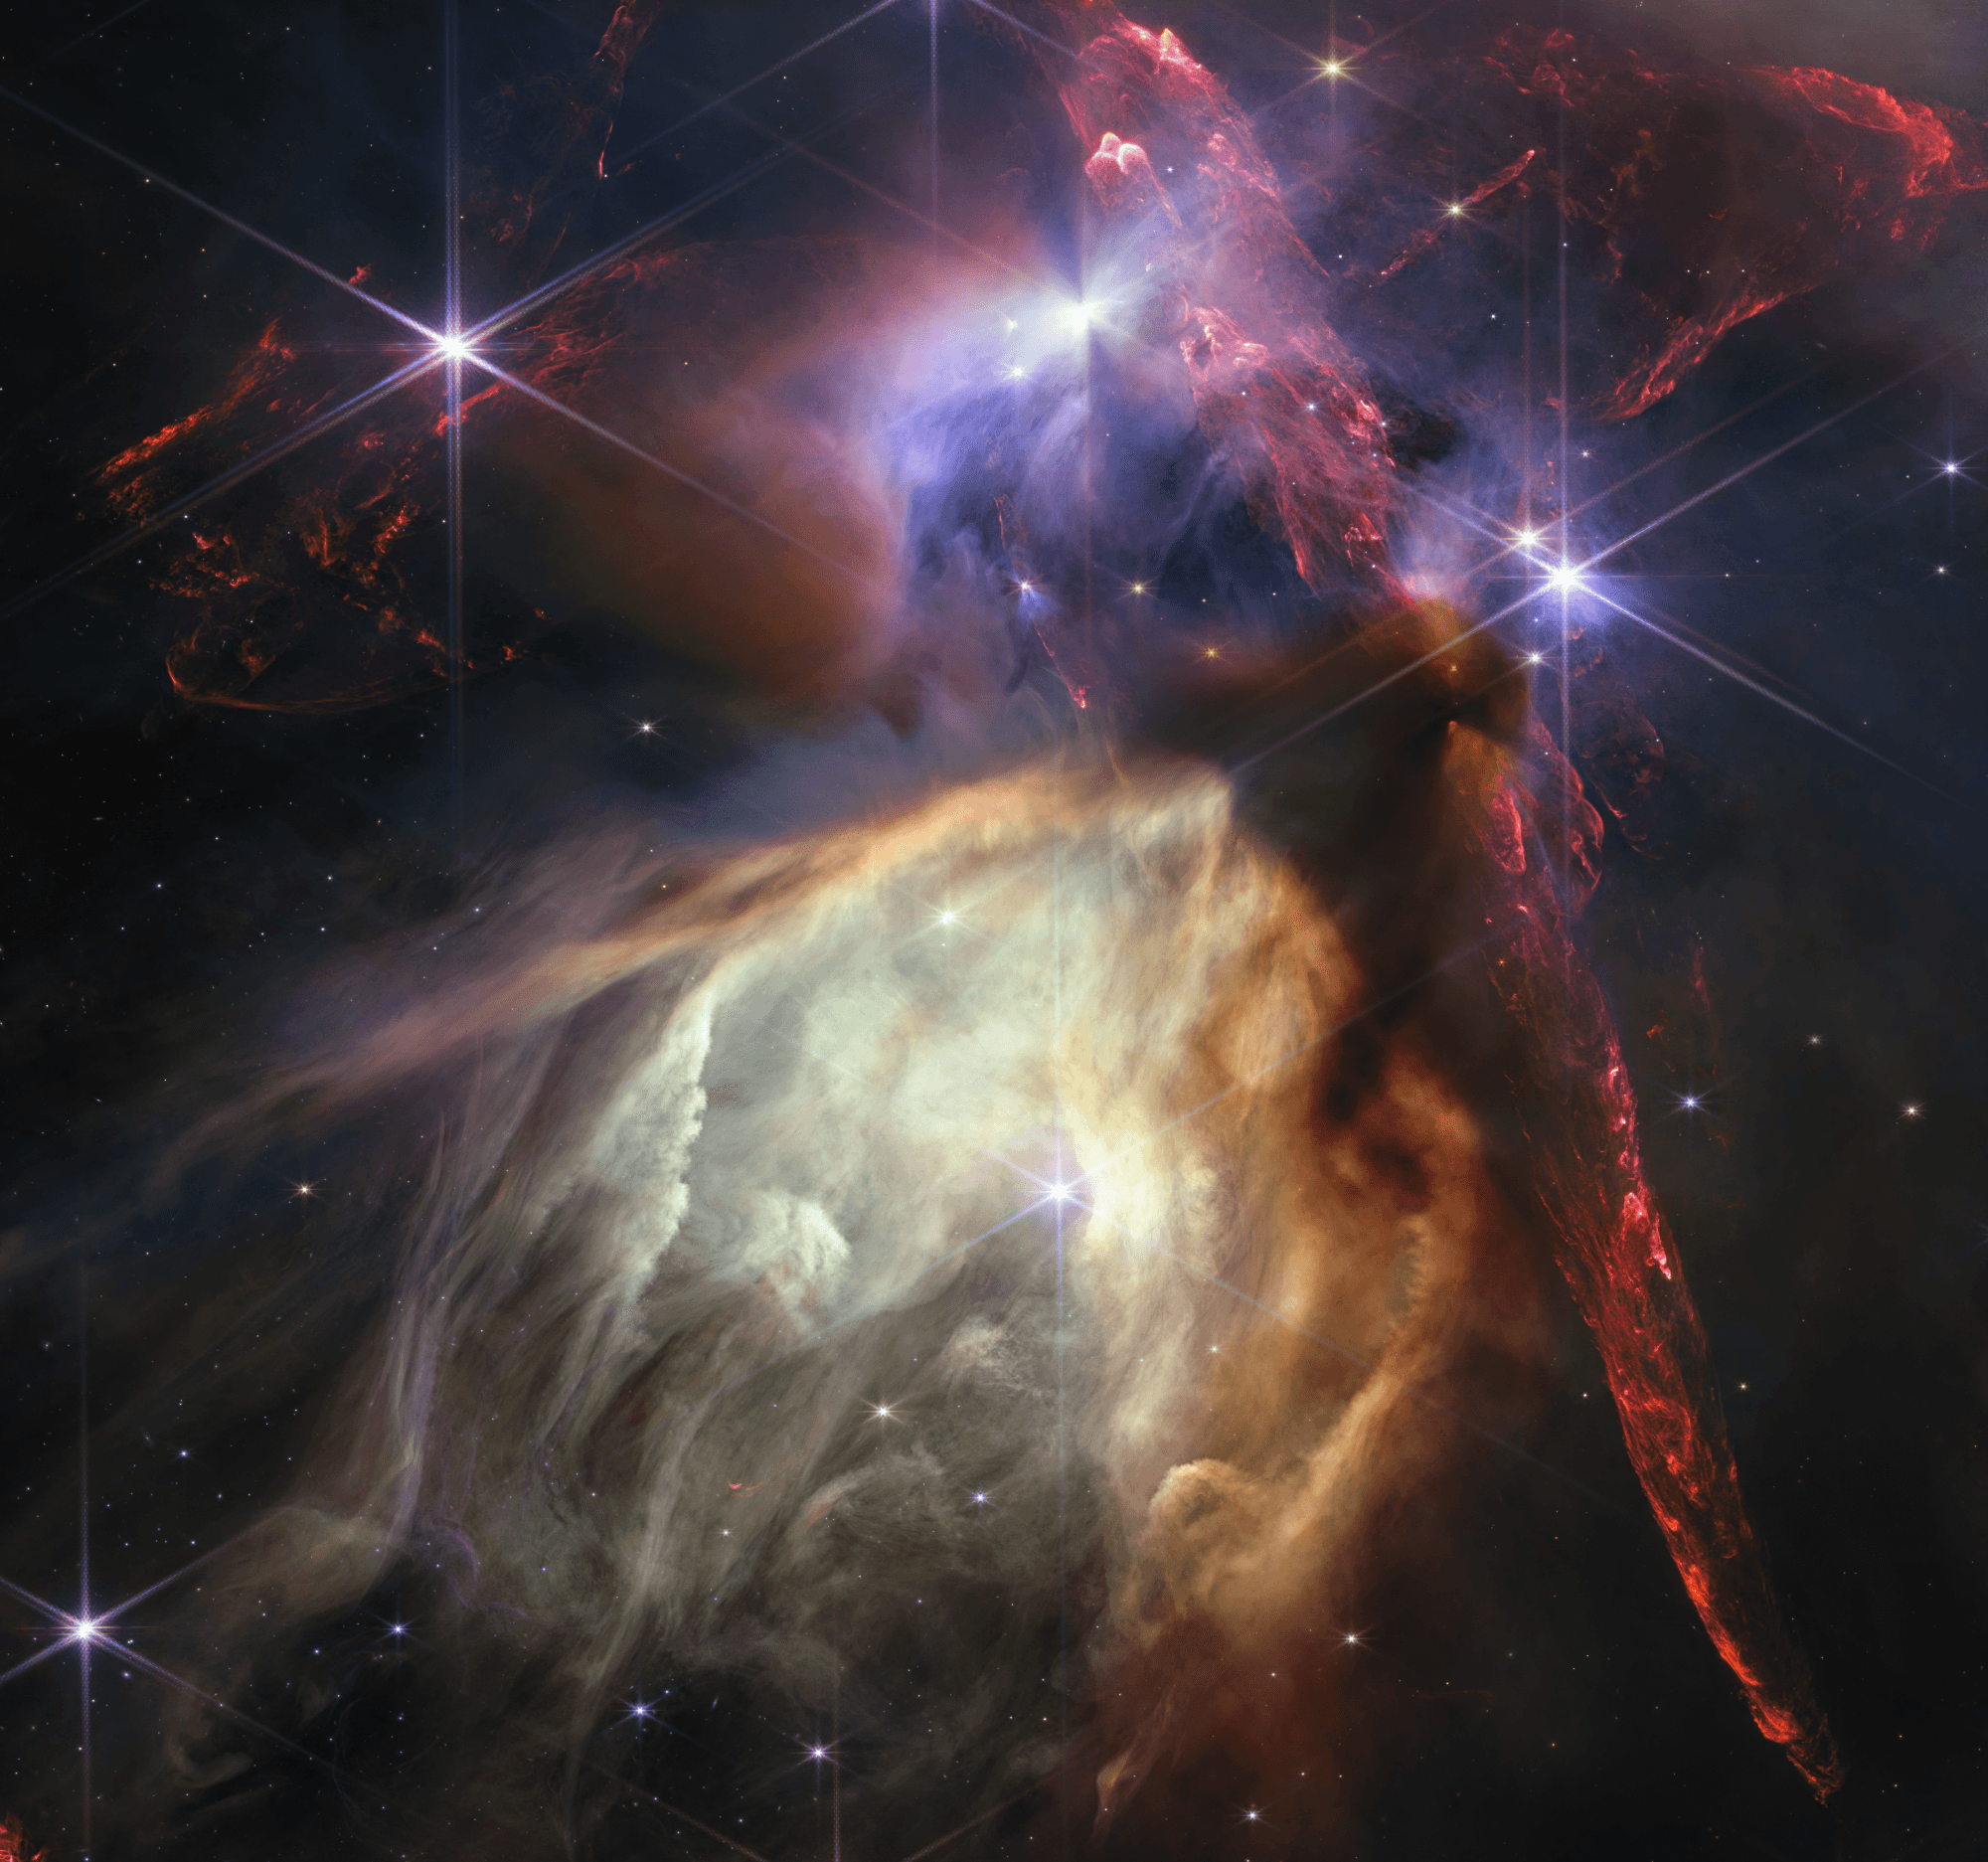 تكوين سديمي يظهر كامتدادات حمراء وتحتها تجويف مصفرّ في حين تظهر نجوم ذات أشواك حيود سداسيّة كبيرة